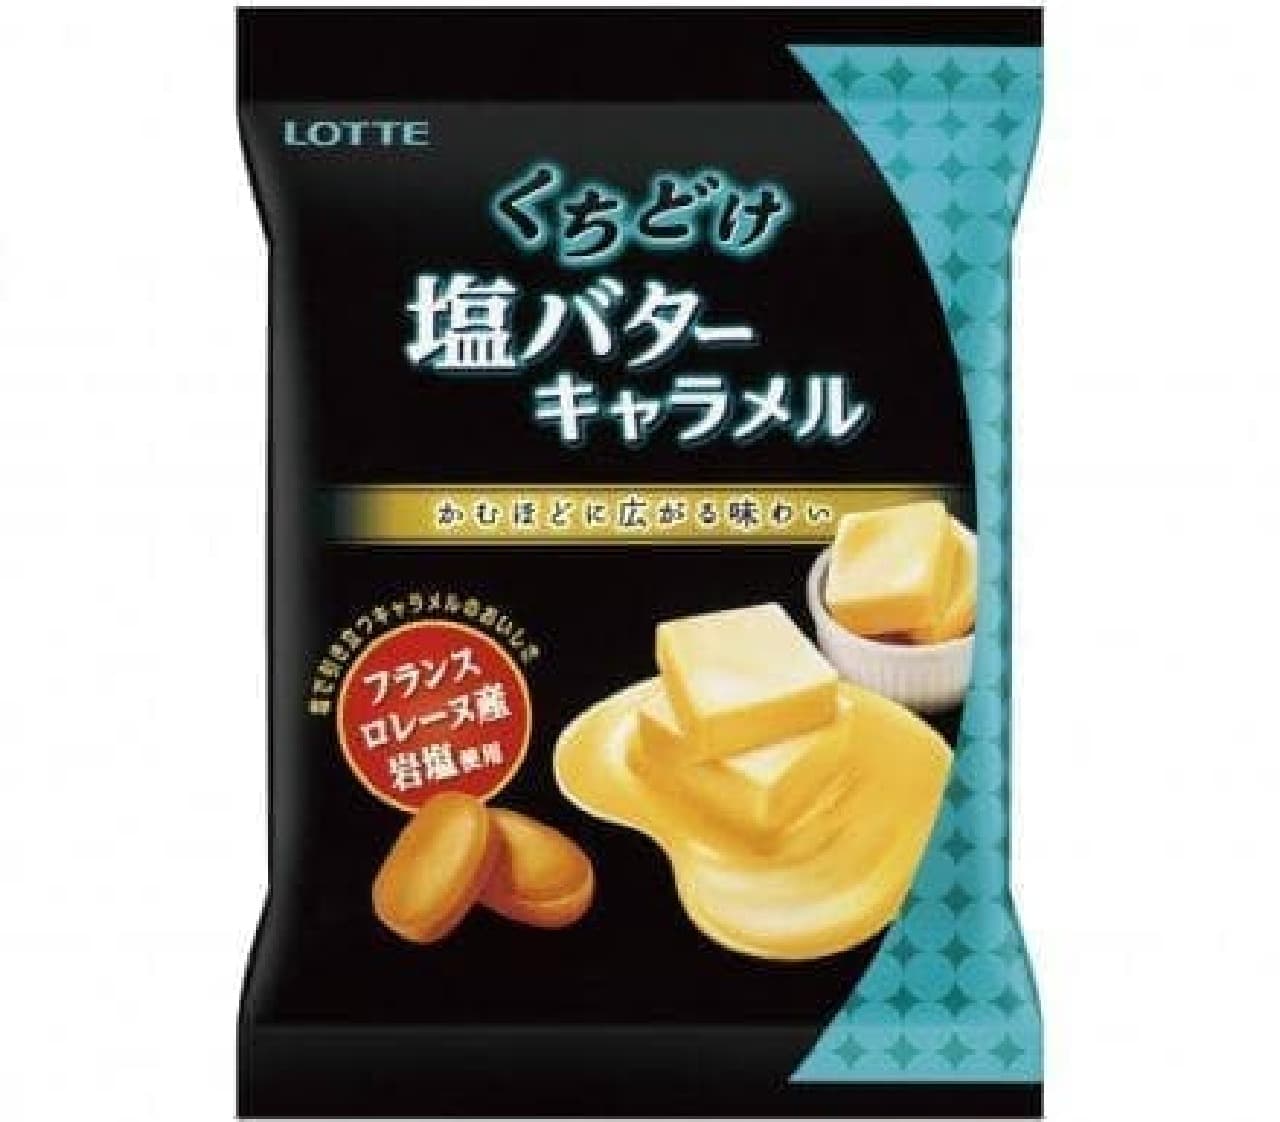 Lotte "Kuchidoke salt butter caramel"